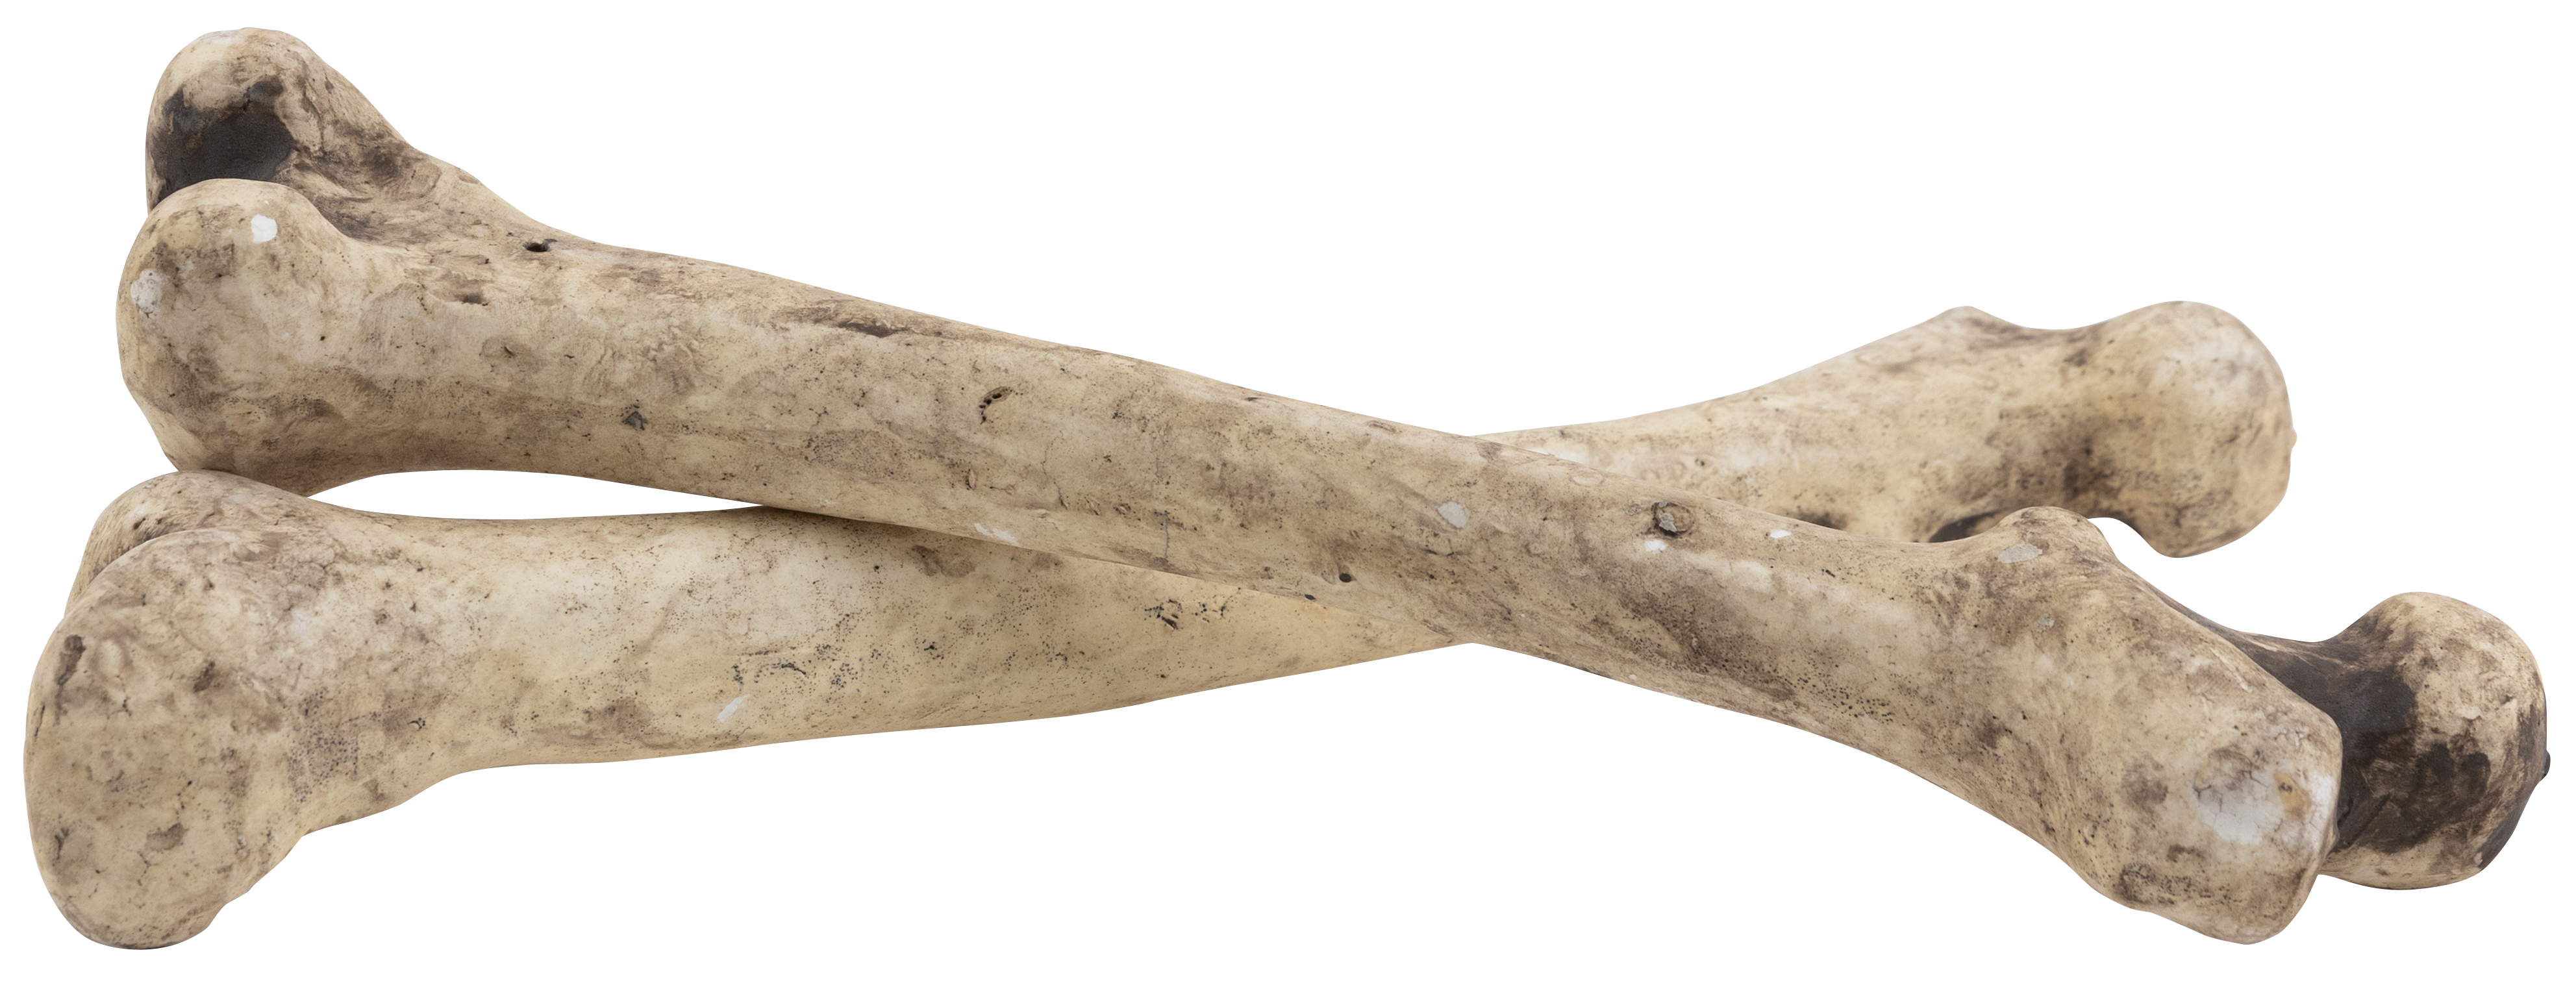 Bone, 40cm, styrofoam